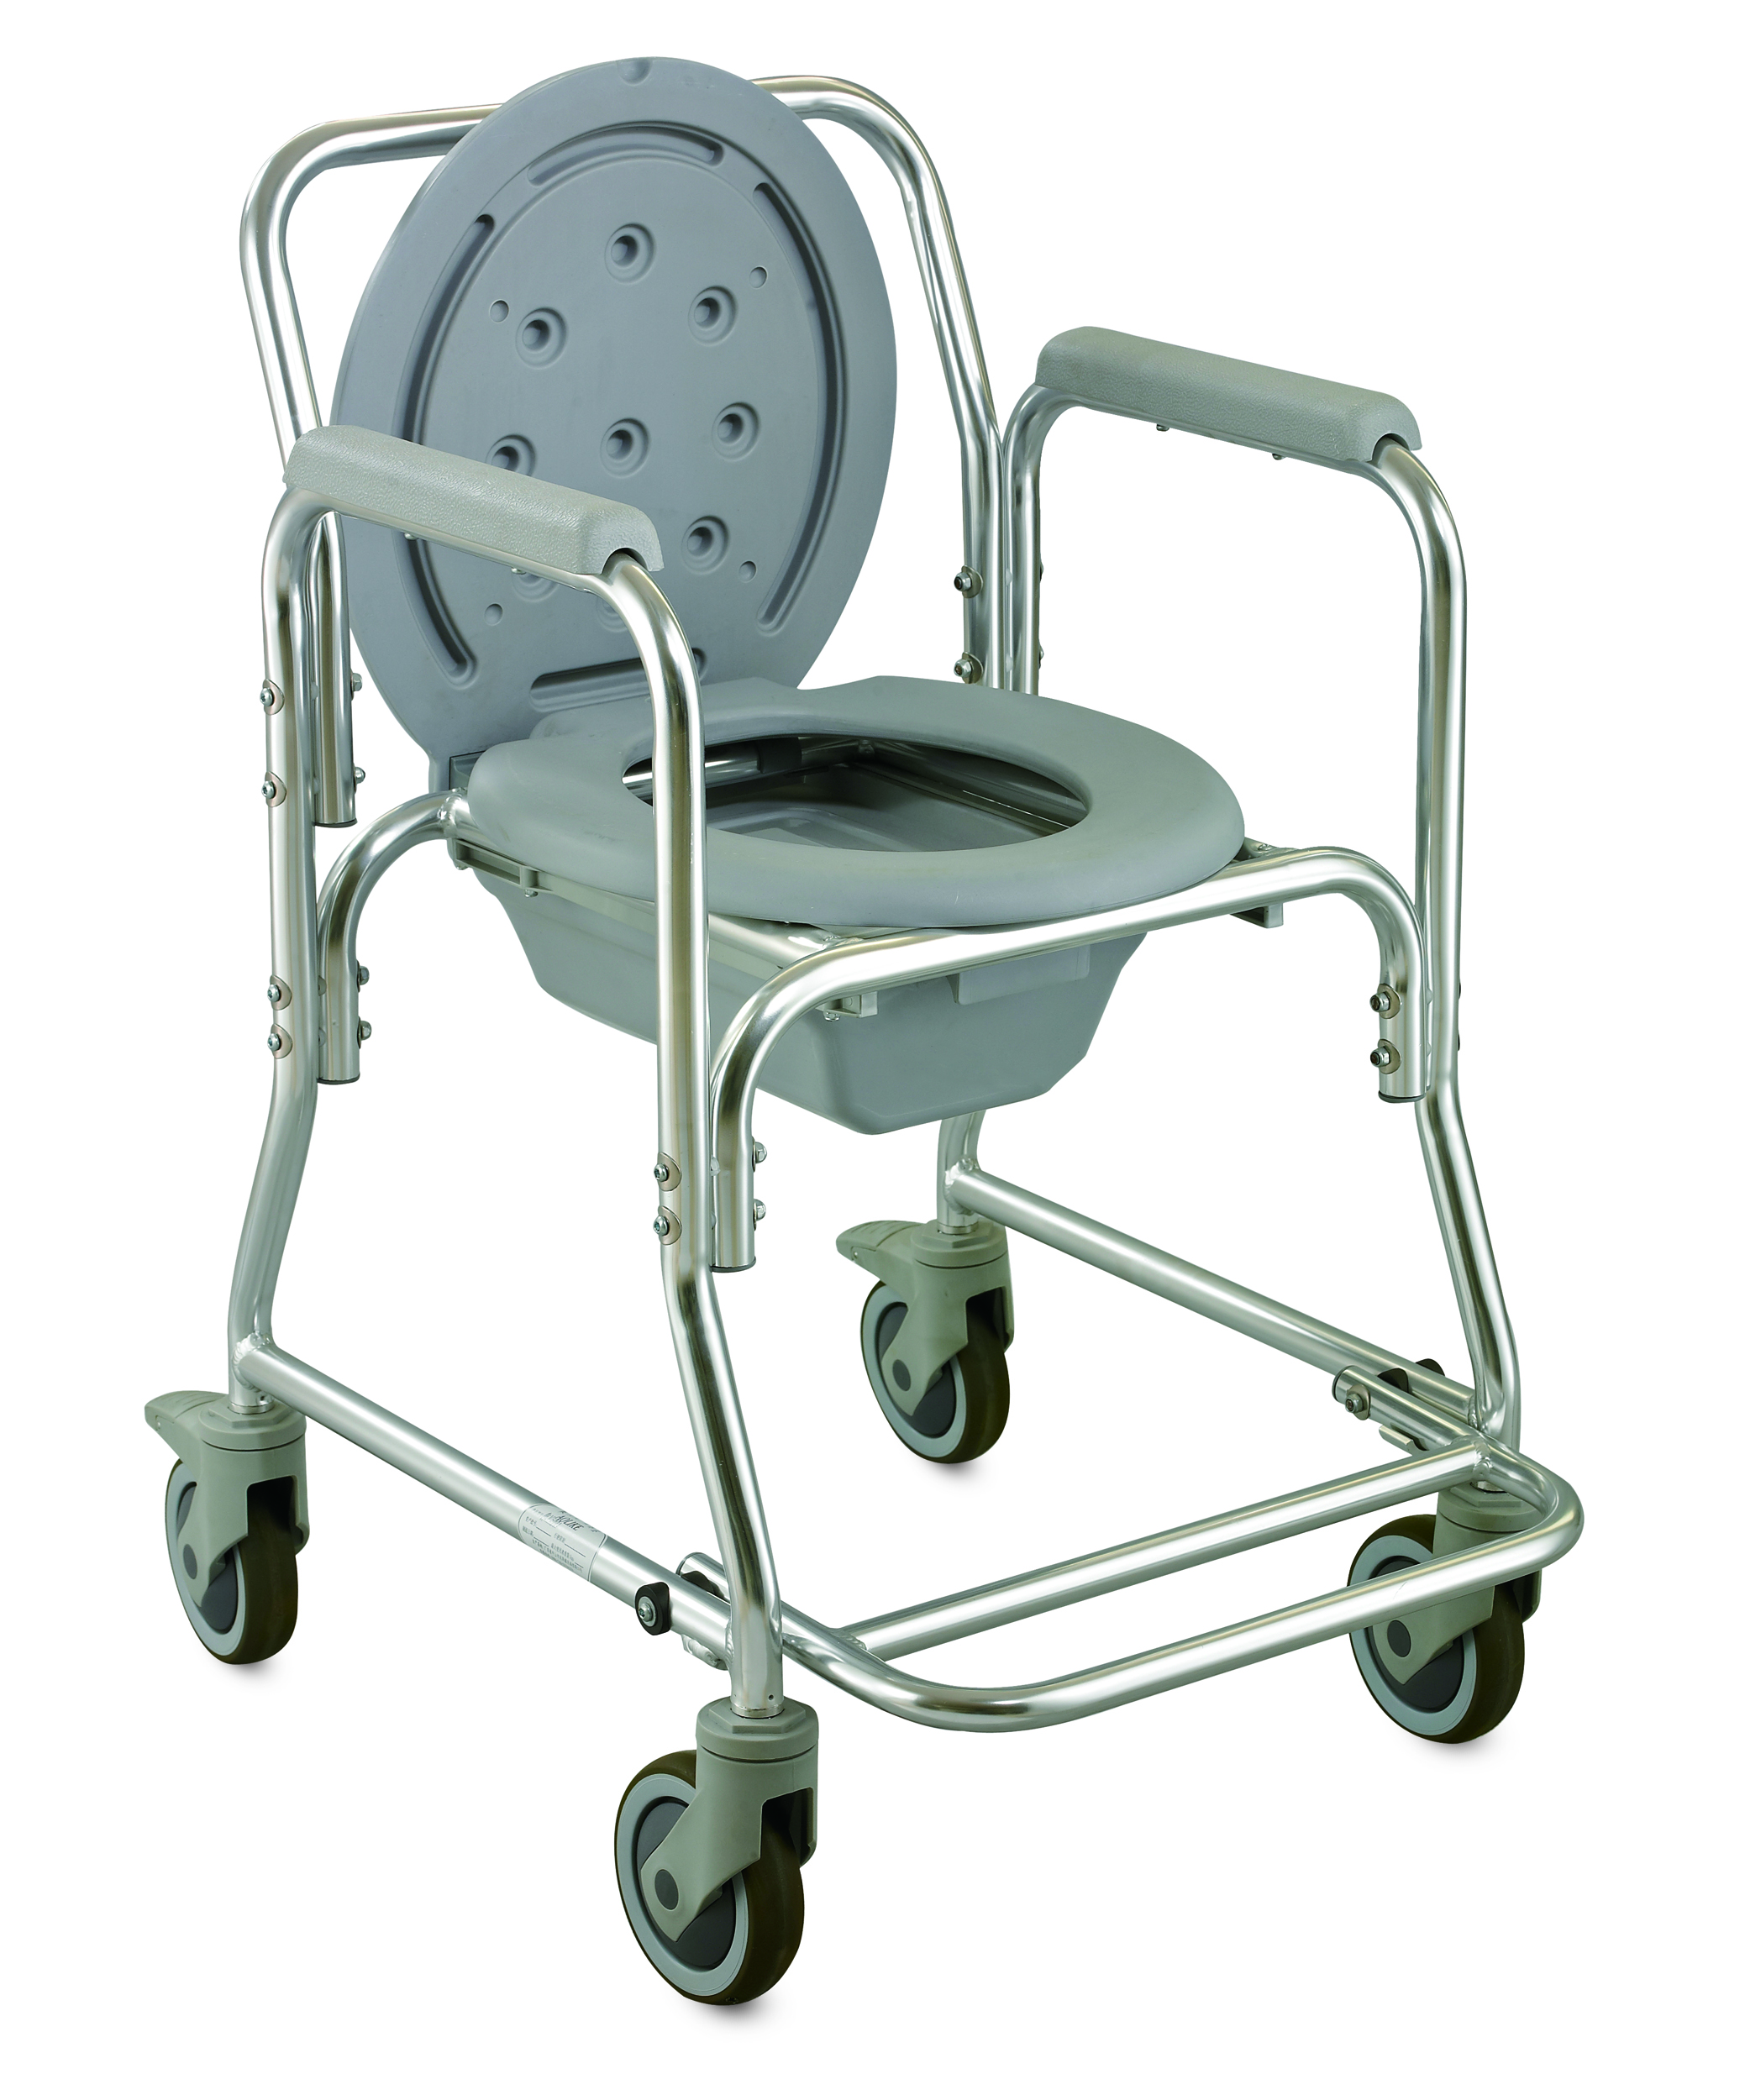 Silla de comodidad Clase de silla de ruedas con marco ligero I 1 año Piezas de repuesto gratis con cuatro ruedas con aluminio de 15 a 20 días 86 * 38 * 88cm